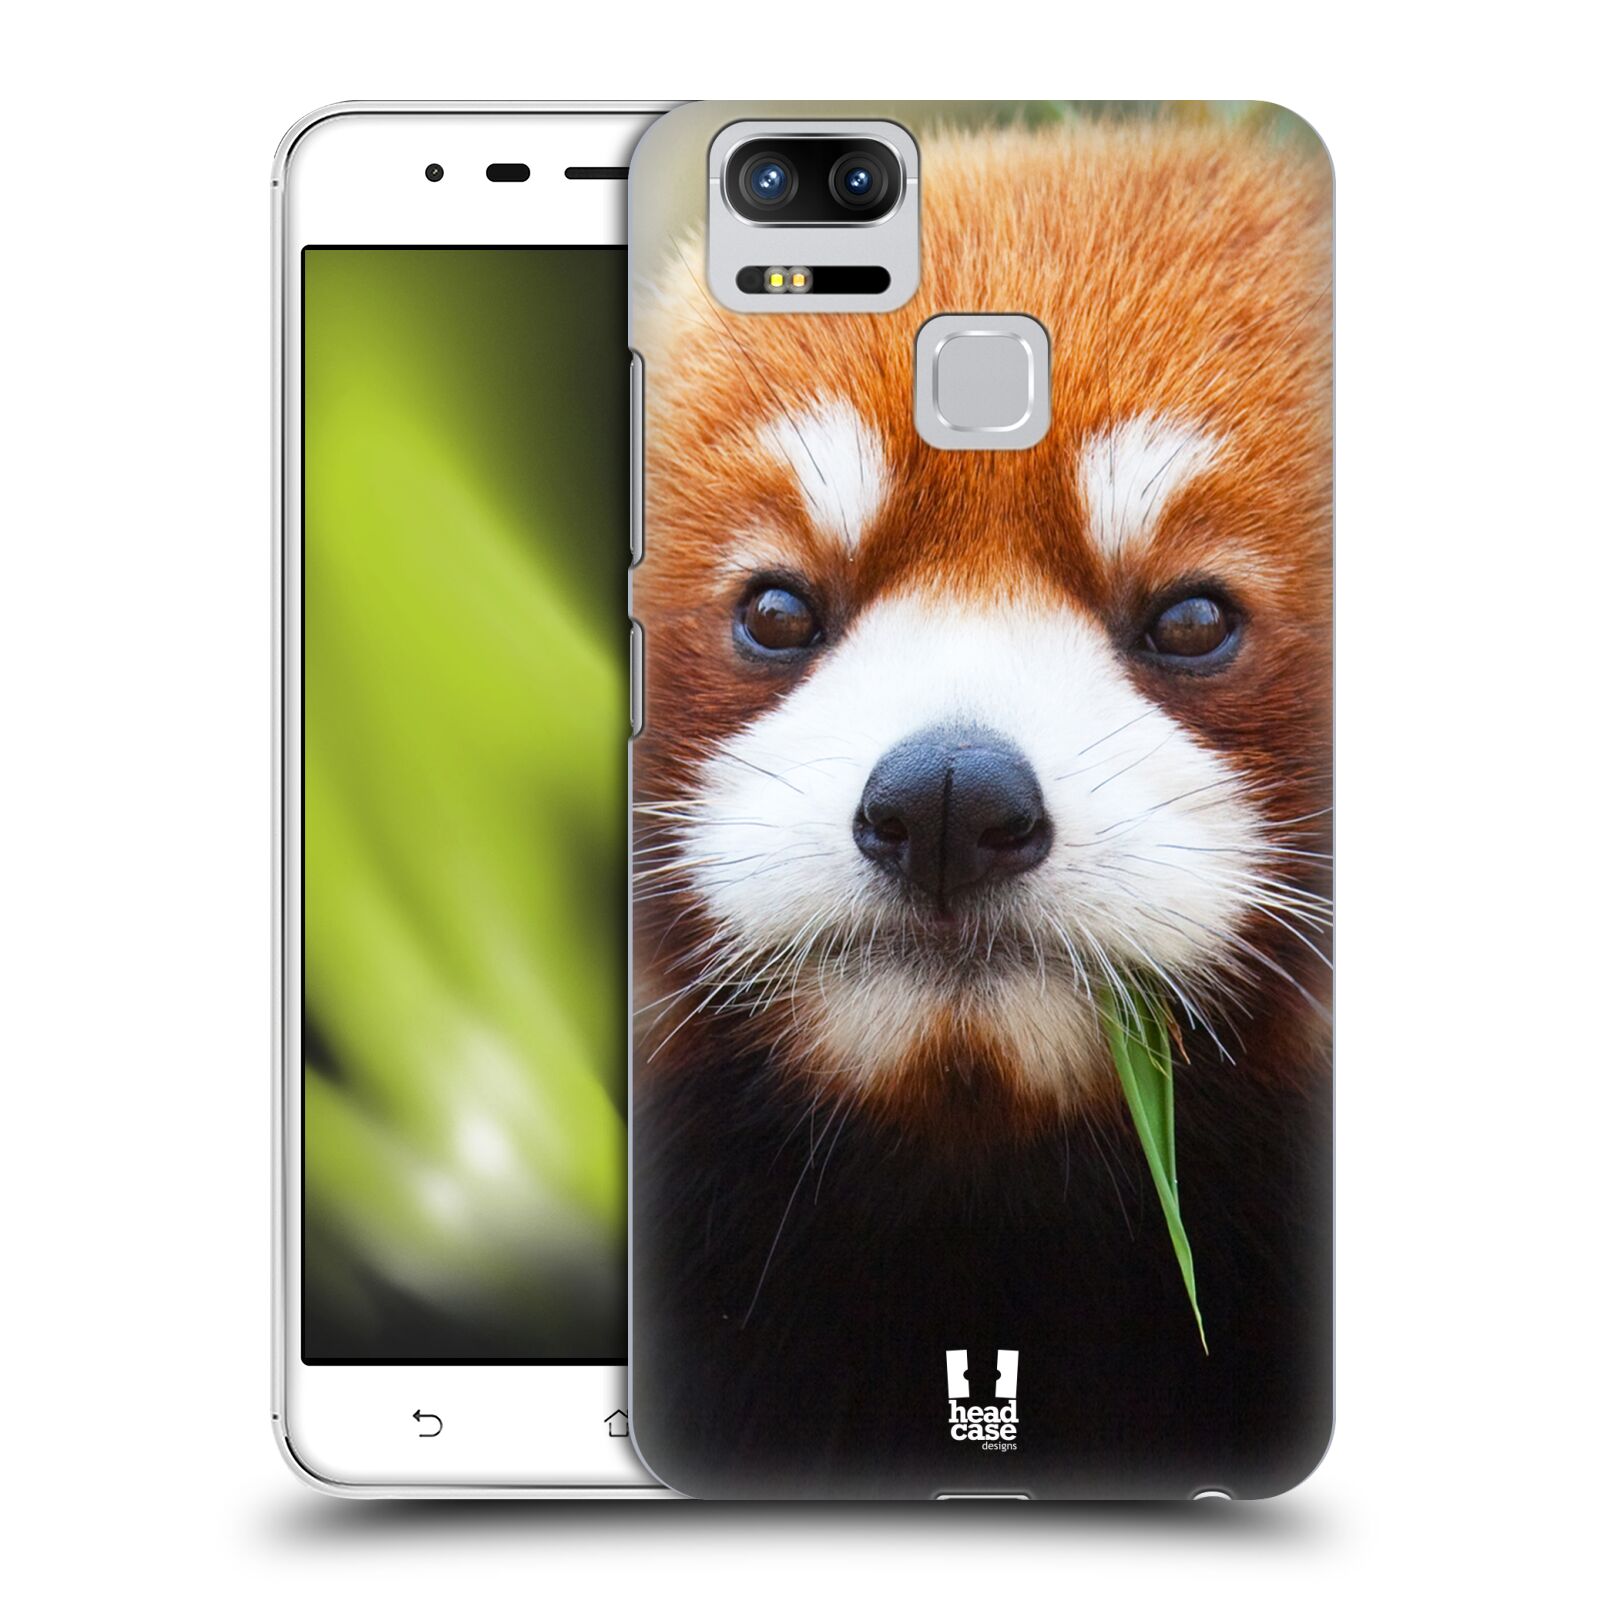 HEAD CASE plastový obal na mobil Asus Zenfone 3 Zoom ZE553KL vzor Divočina, Divoký život a zvířata foto PANDA HNĚDÁ